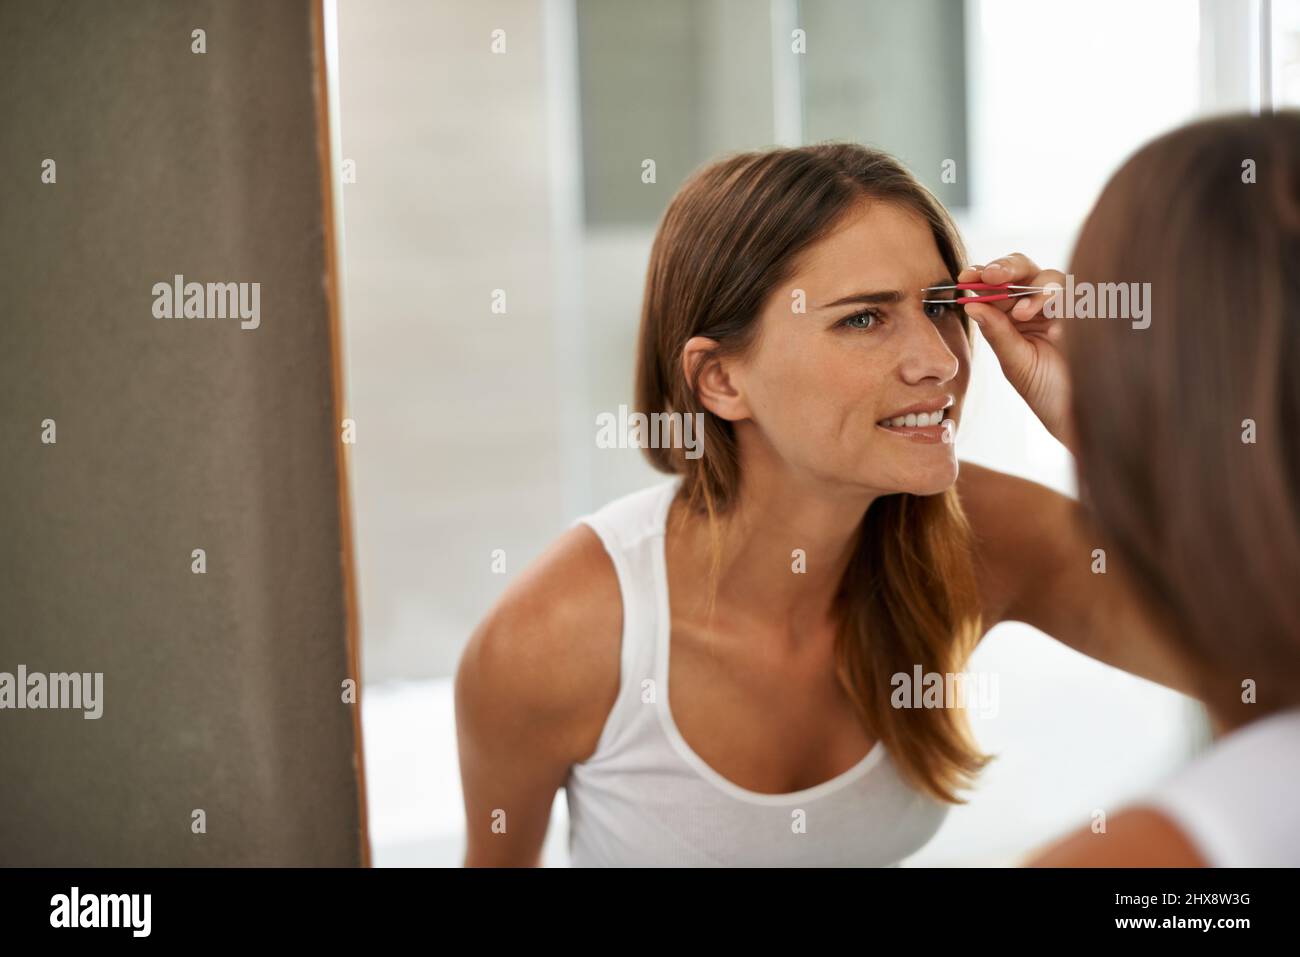 Essere bello può essere un po 'doloroso a volte. Scatto di una giovane donna che le pinzava dolorosamente le sopracciglia in uno specchio da bagno. Foto Stock